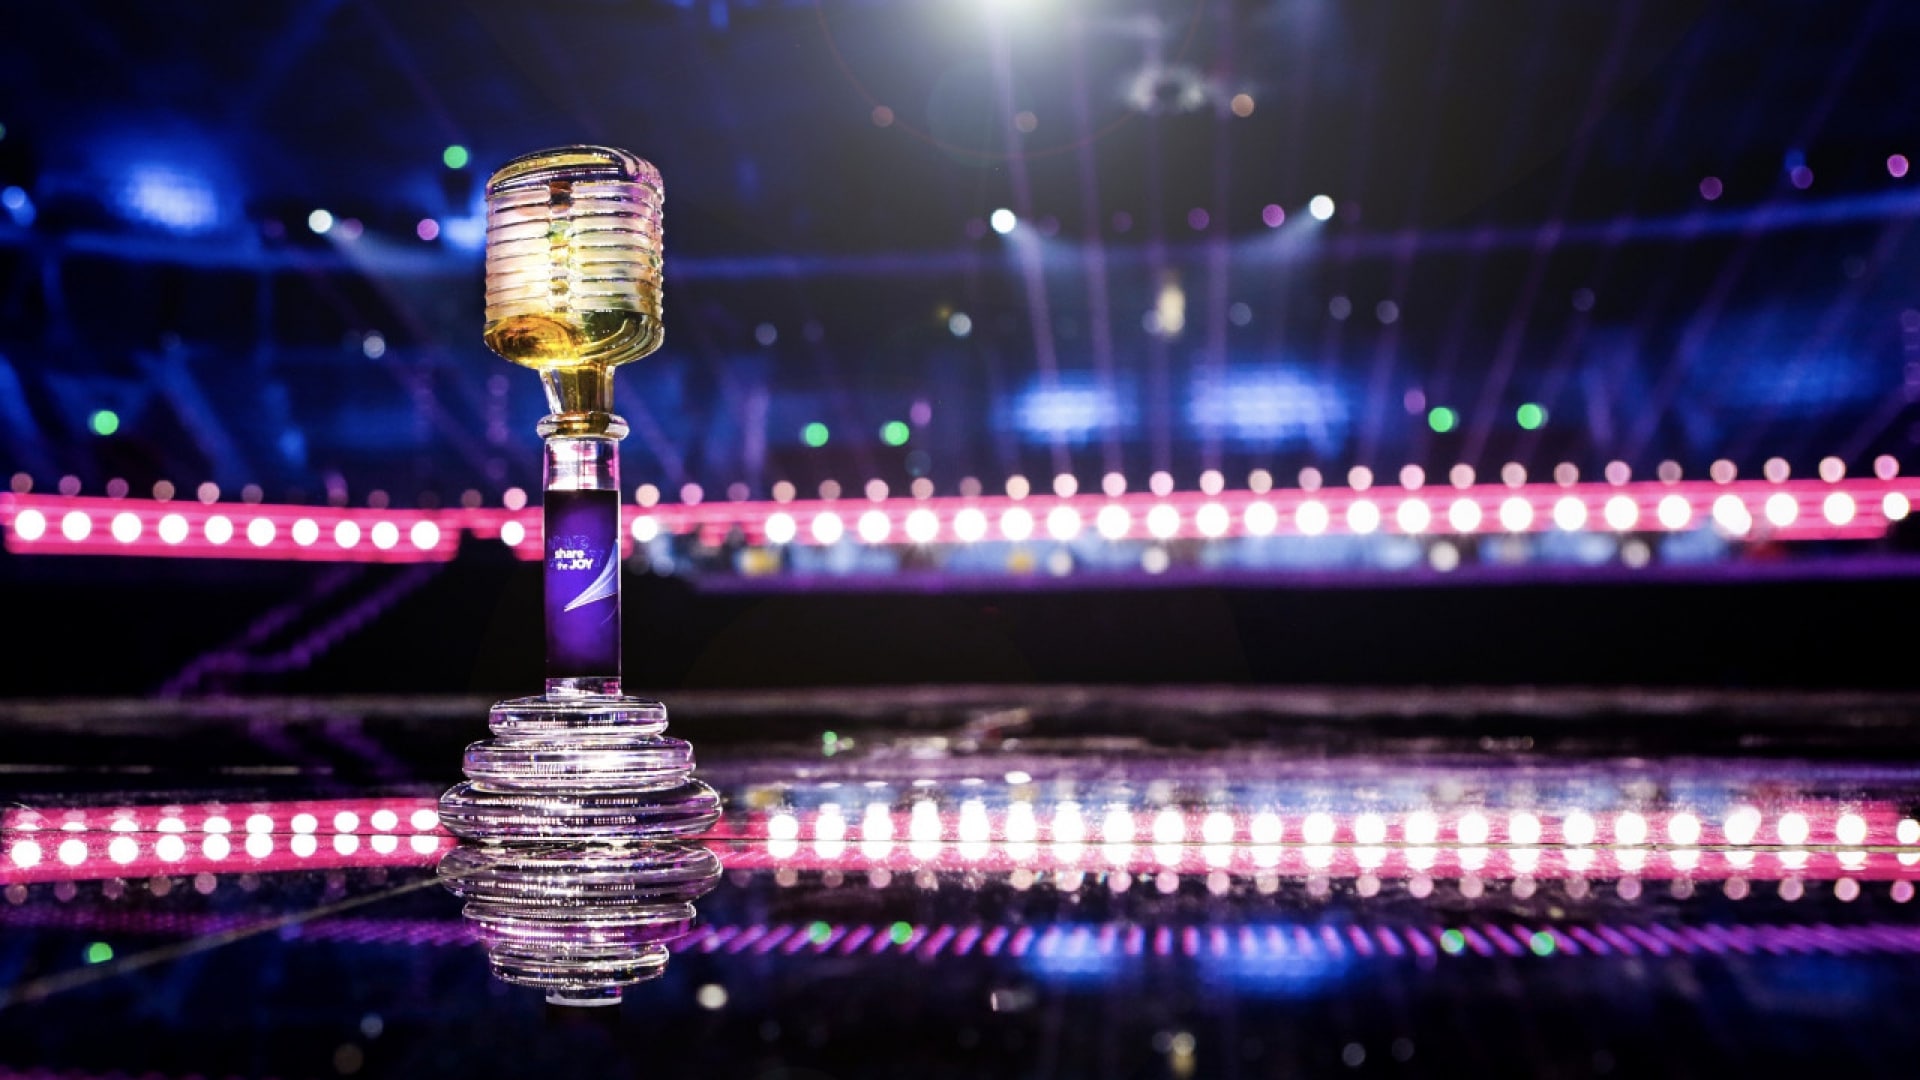 A 2019-es Junior Eurovíziós Dalfesztivál győztesének járó, a svéd Kosta Boda által tervezett trófa a lengyelországi Arena Gliwice színpadán - Thomas Hanses (EBU) fotója